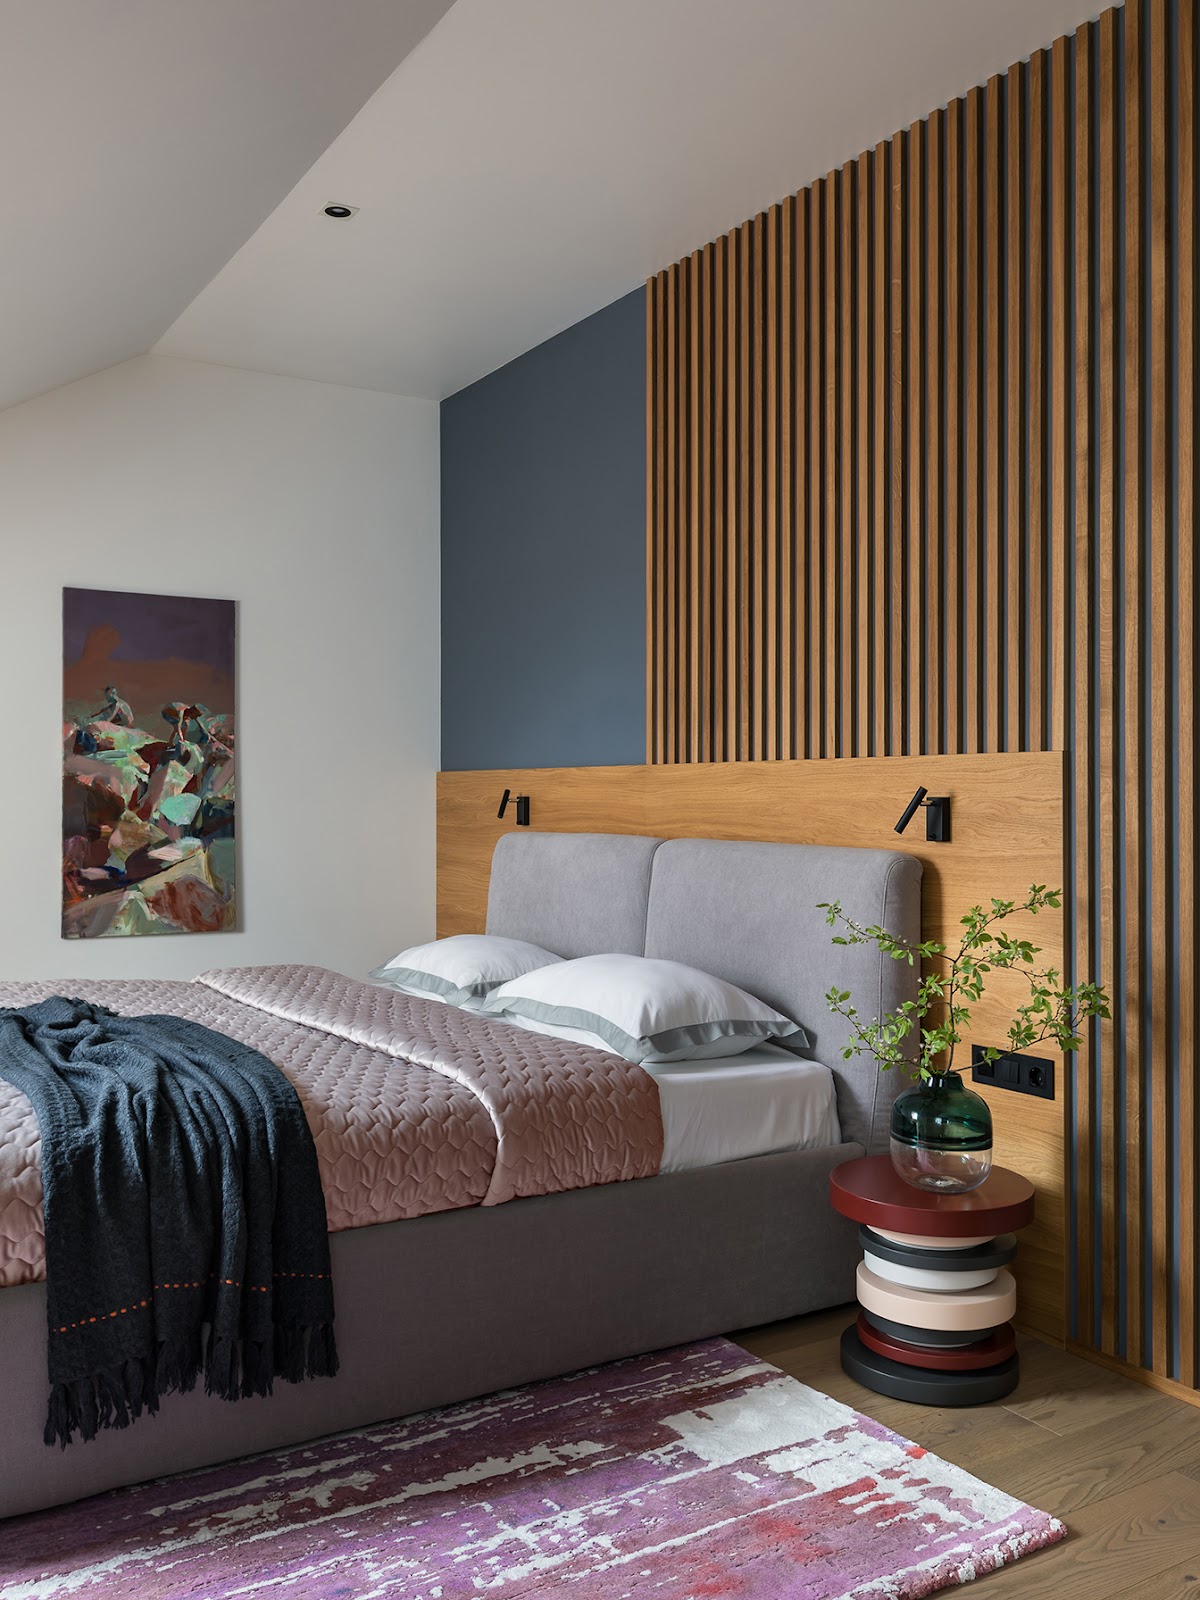 Phòng ngủ ấn tượng bởi rất nhiều những màu sắc kết hợp sinh động từ chăn ga gối đến táp đầu giường như màu hồng, xám, đỏ, tím, đen, xanh ngọc lục bảo,... Đặc biệt là bức tranh treo tường và tấm thảm trải sàn 'loang lổ' khác biệt.